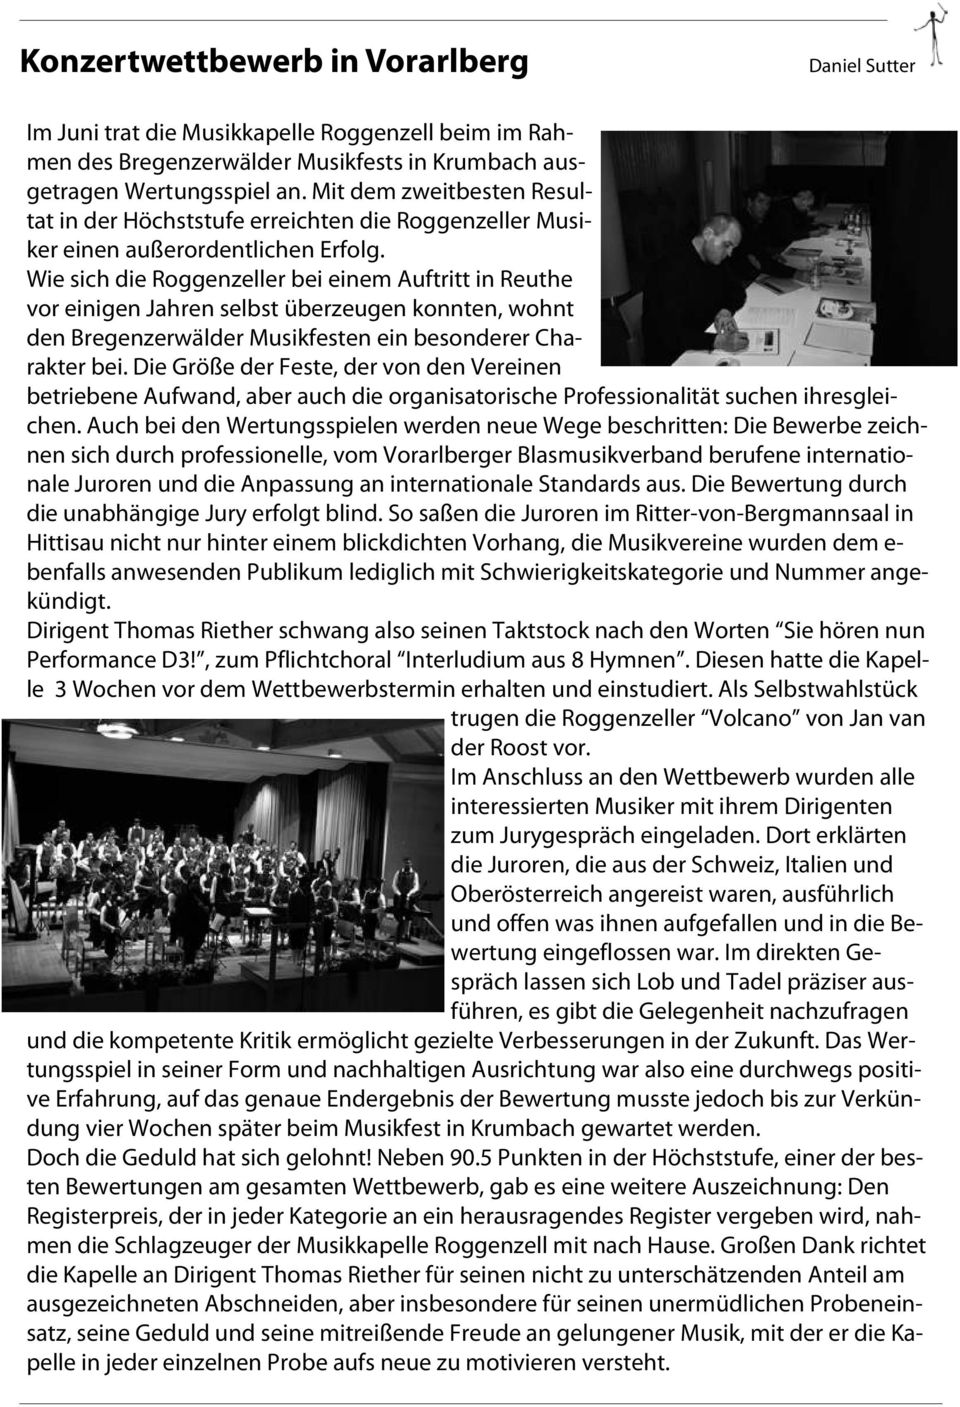 Wie sich die Roggenzeller bei einem Auftritt in Reuthe vor einigen Jahren selbst überzeugen konnten, wohnt den Bregenzerwälder Musikfesten ein besonderer Charakter bei.